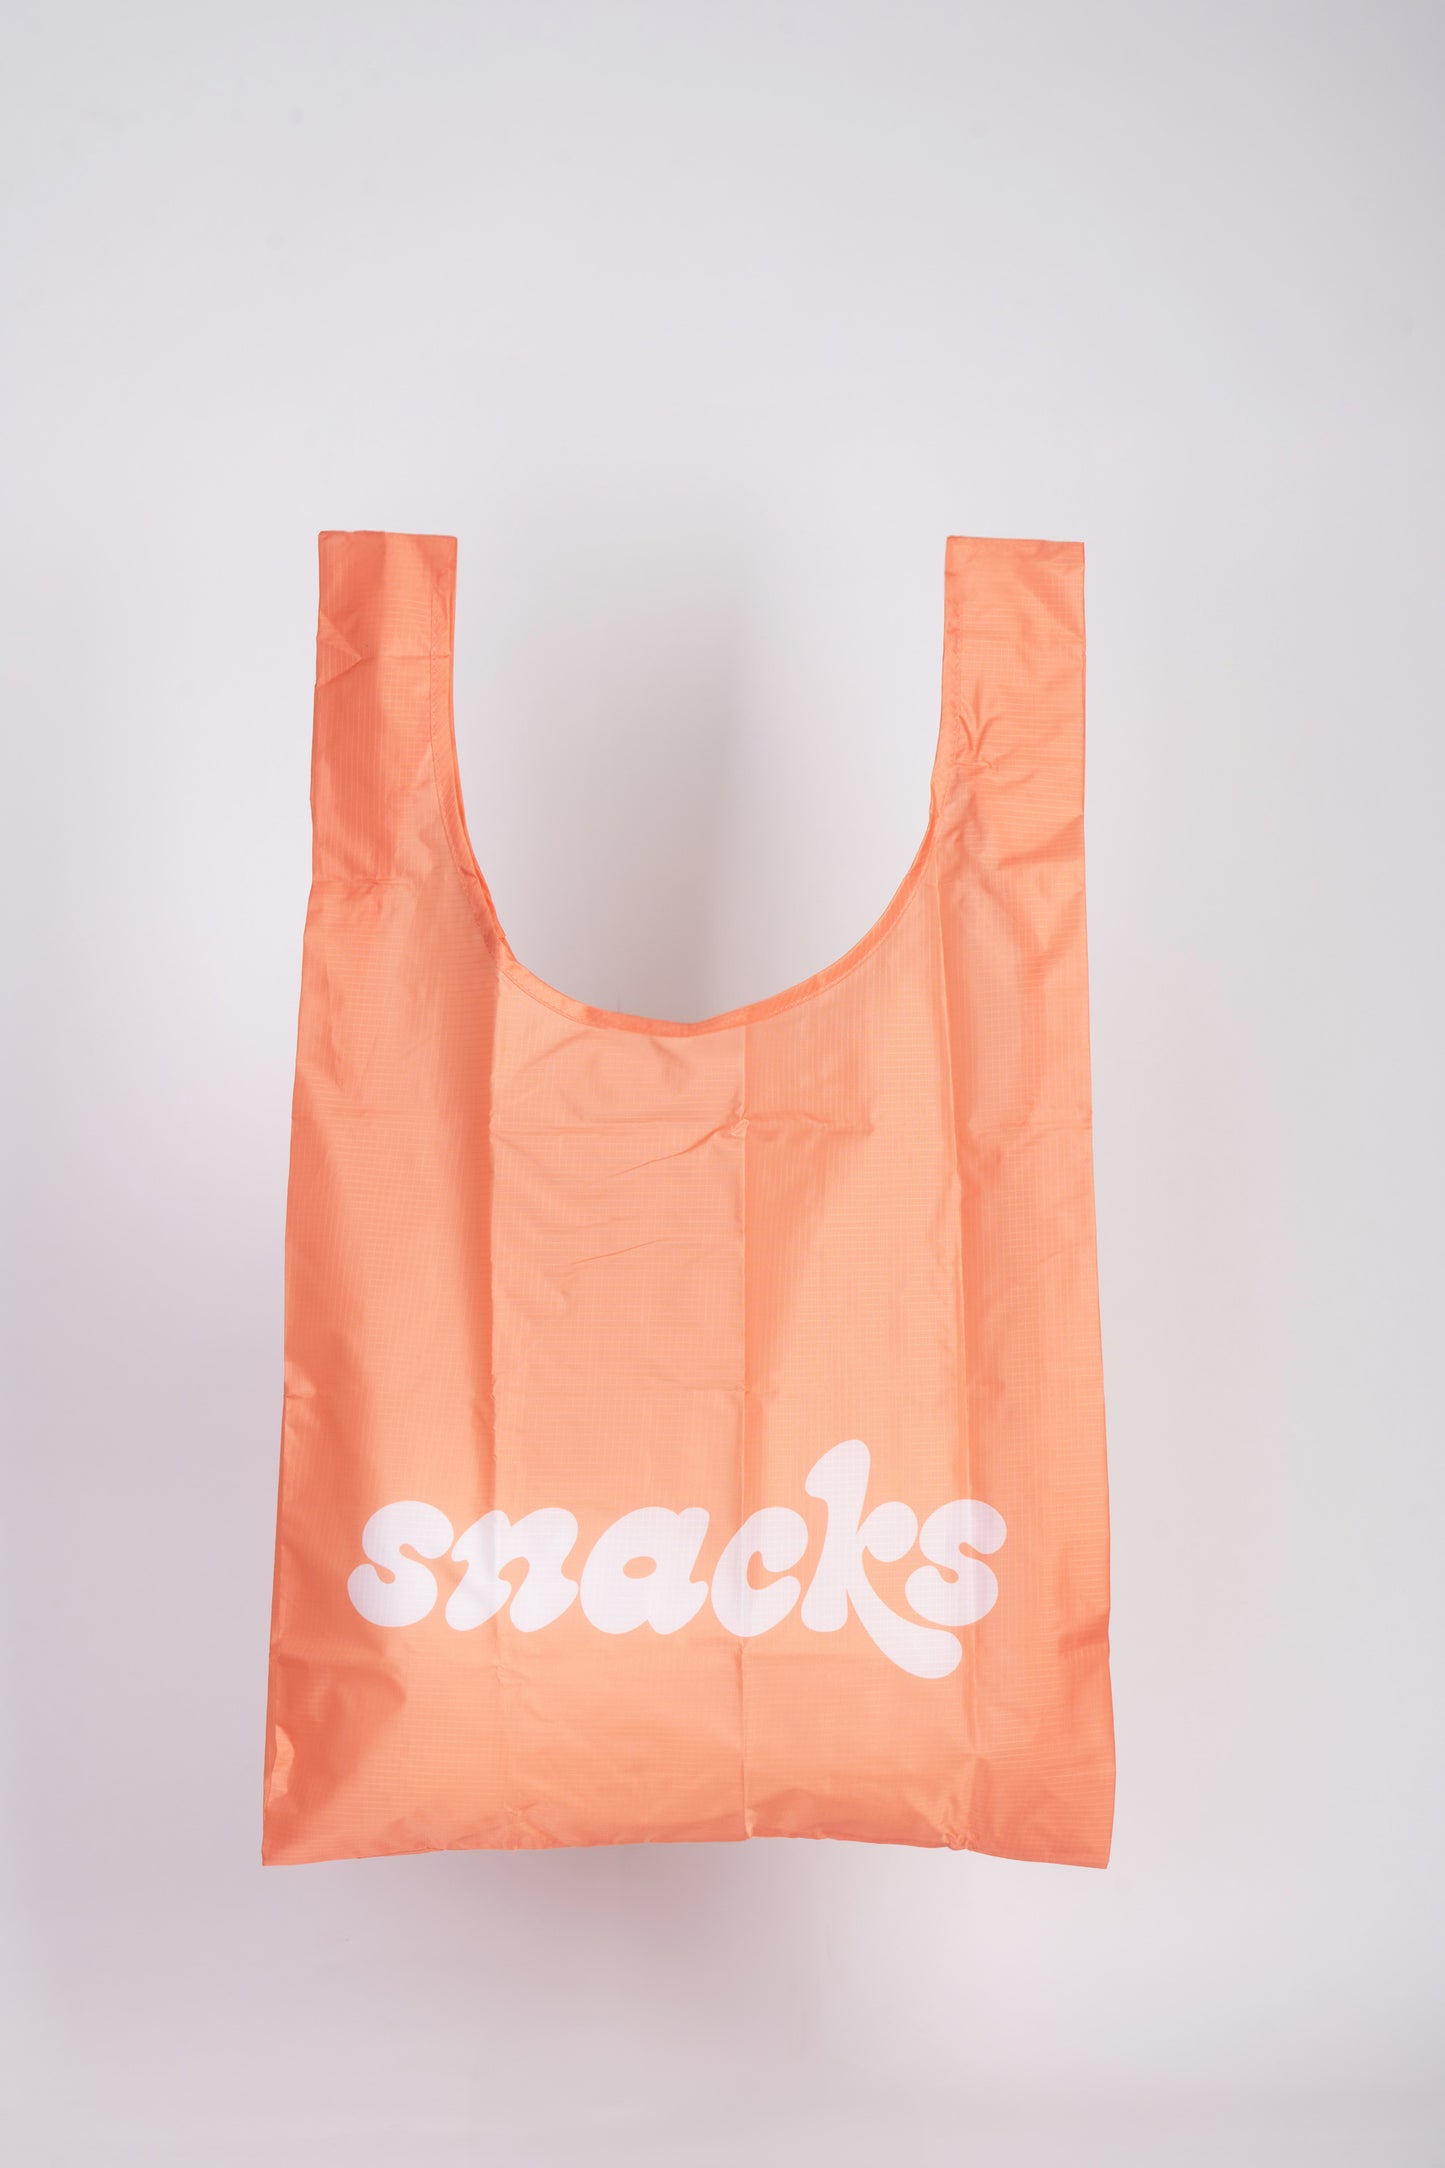 SNACKS- Reusable Bag